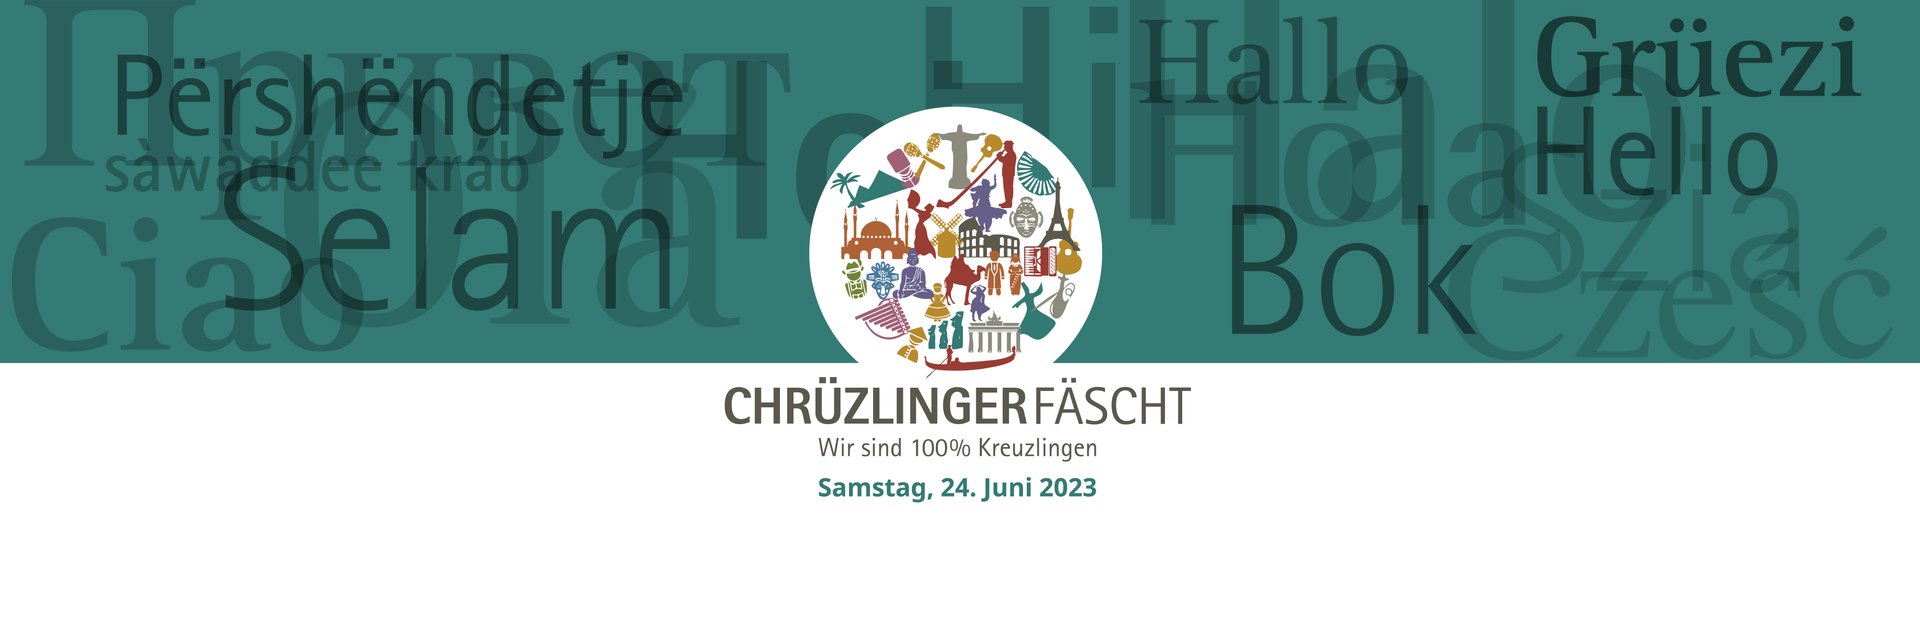 Chruezlinger_Faescht_Headerbild_Logo_Datum_1920x640_NEU